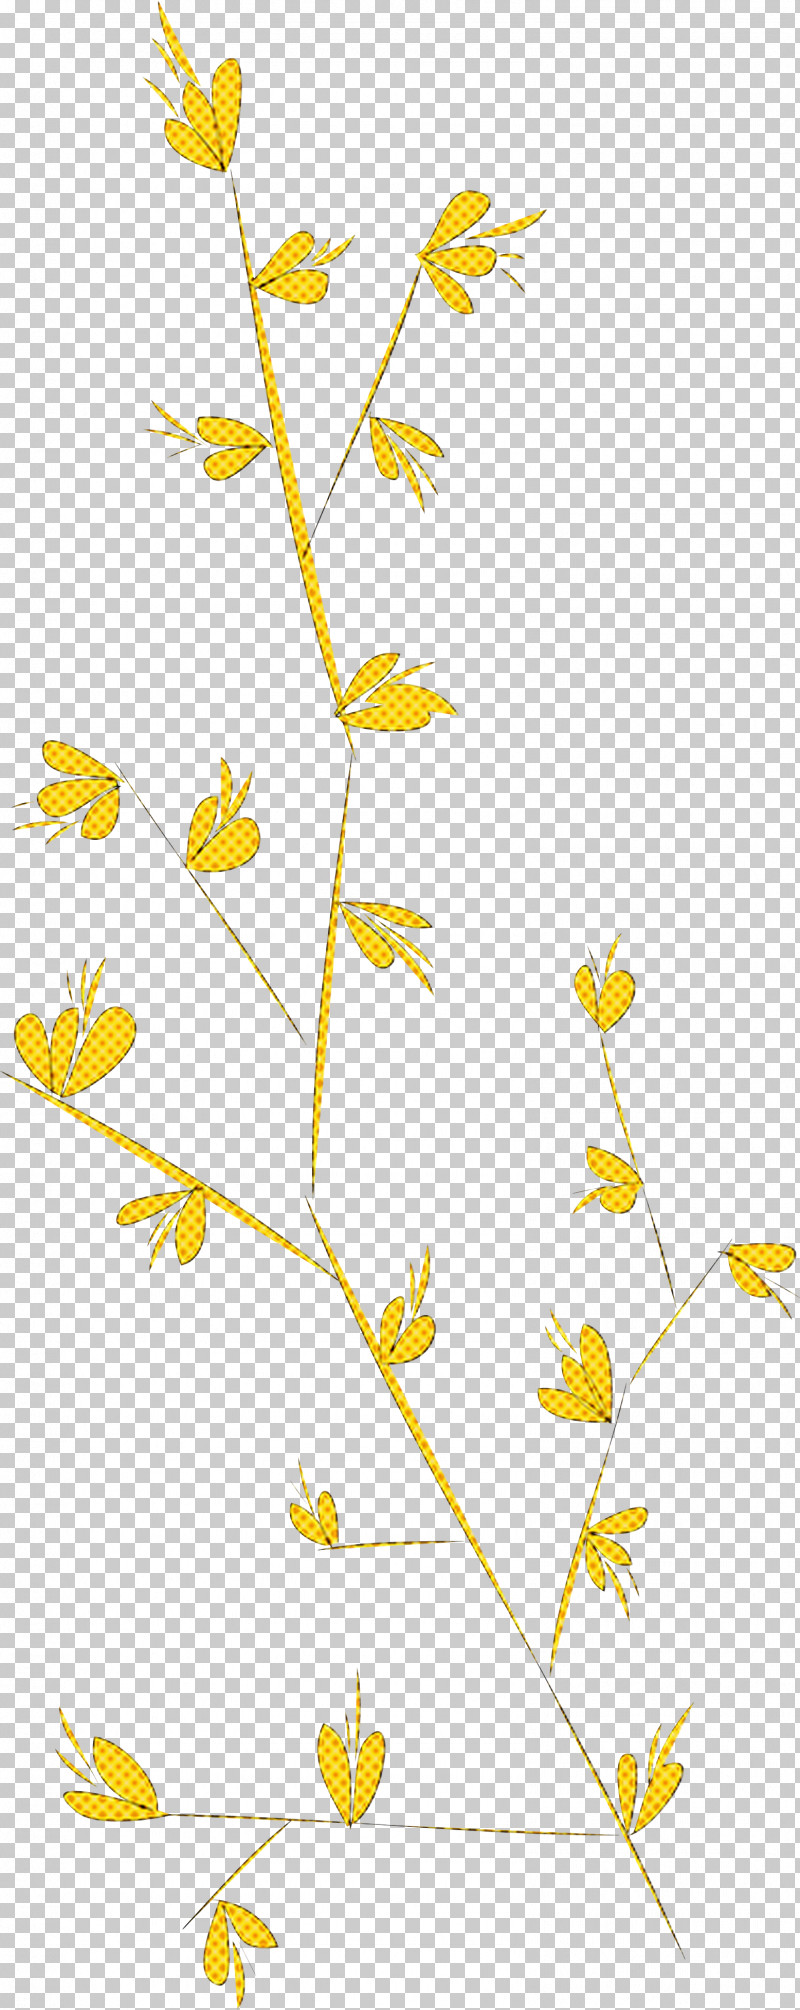 Simple Leaf Simple Leaf Drawing Simple Leaf Outline PNG, Clipart, Cartoon, Drawing, Floral Design, Leaf, Leaf Black White Free PNG Download